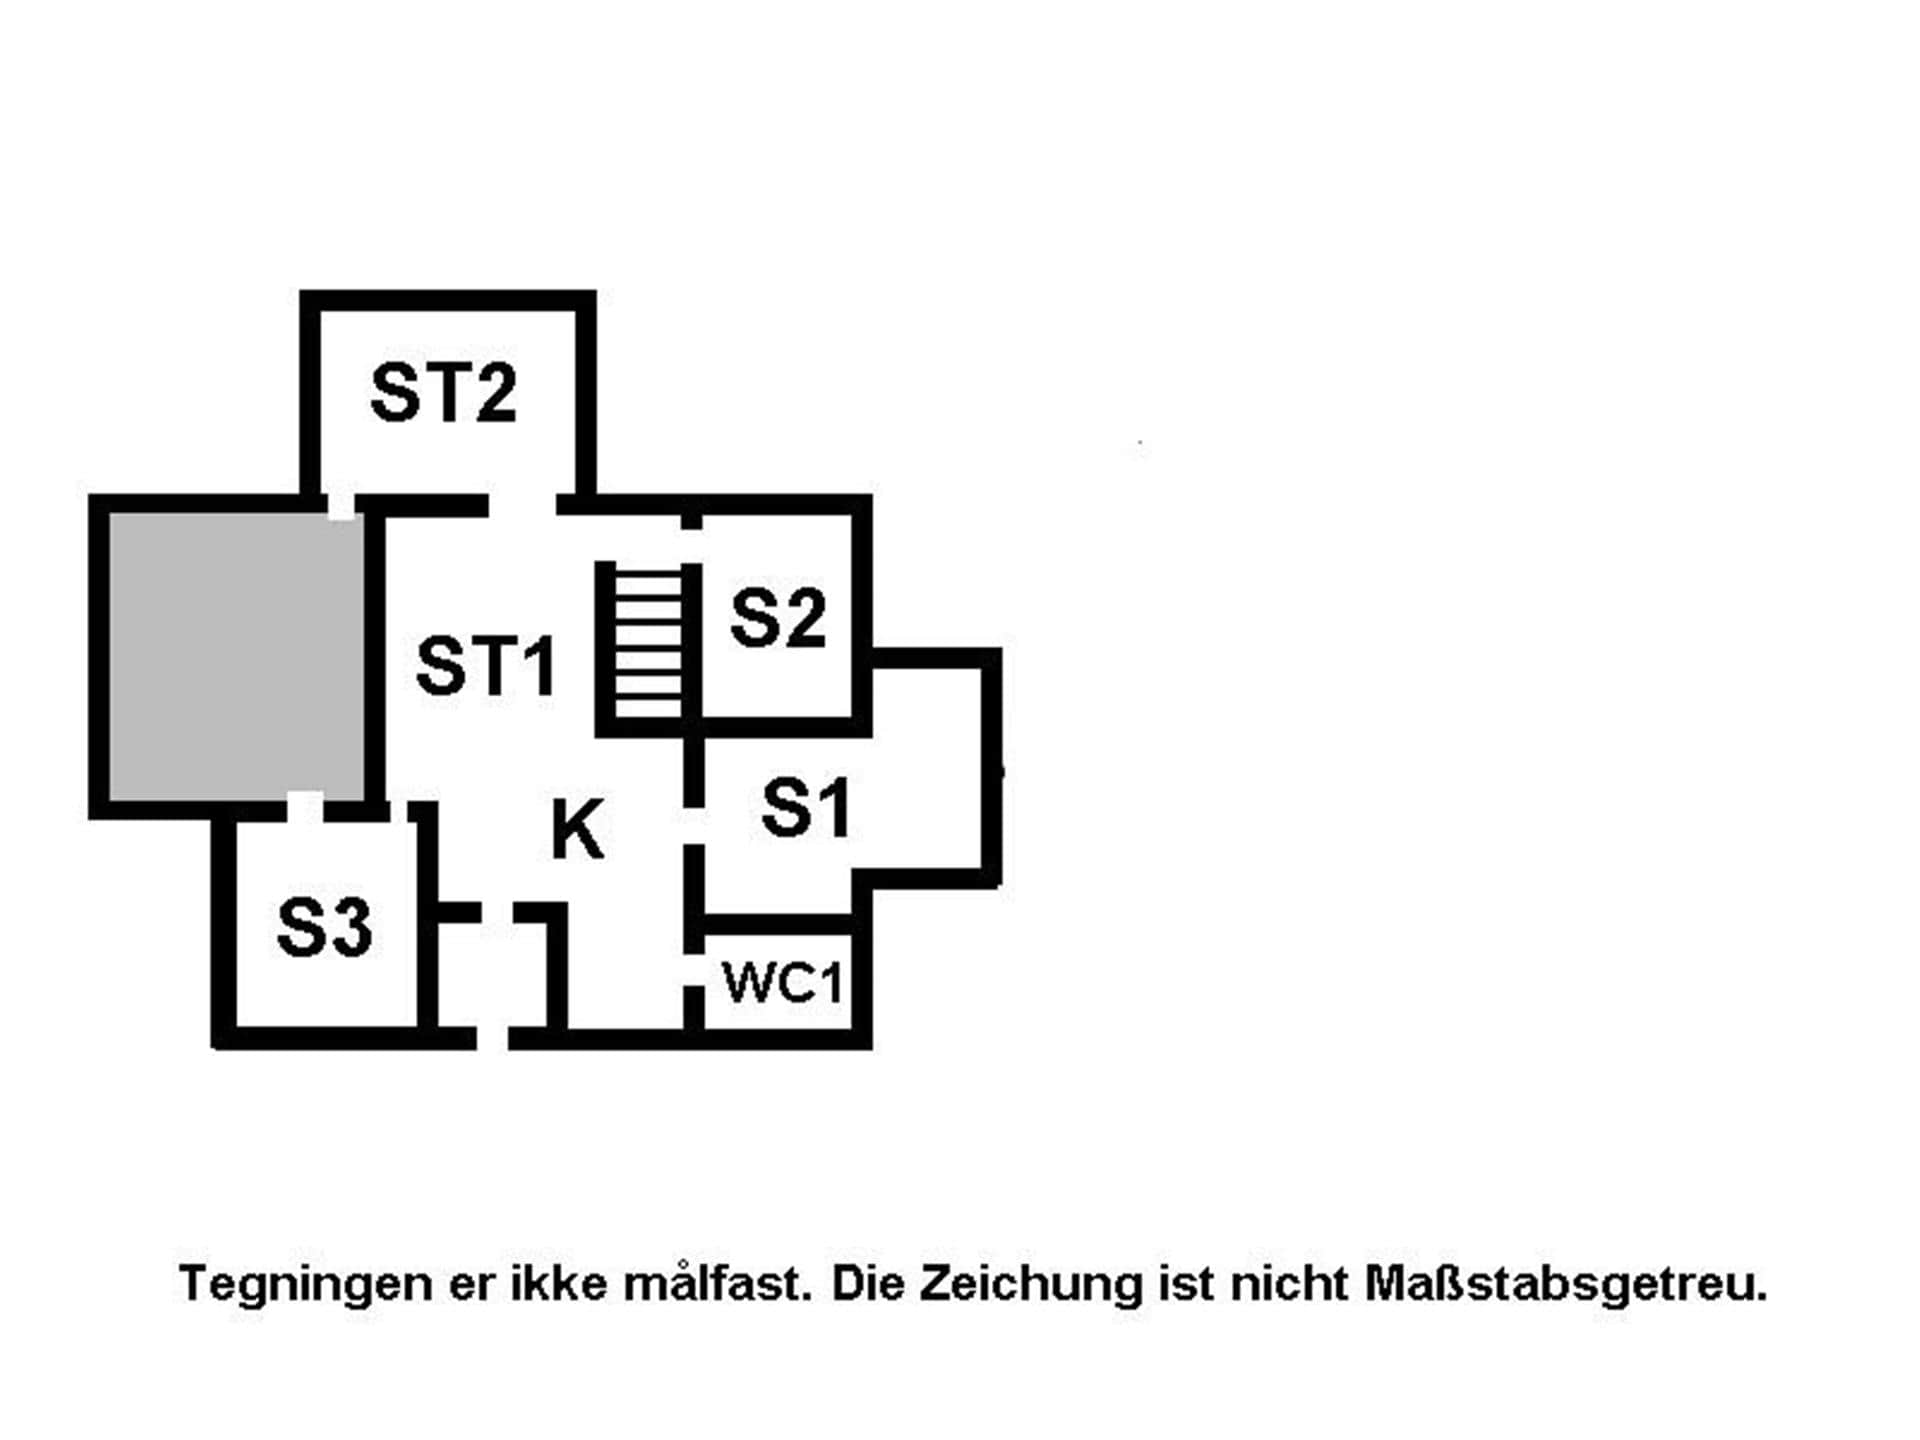 Interior 21-15 Holiday-home 3321, Bundgarnet 135, DK - 4780 Stege